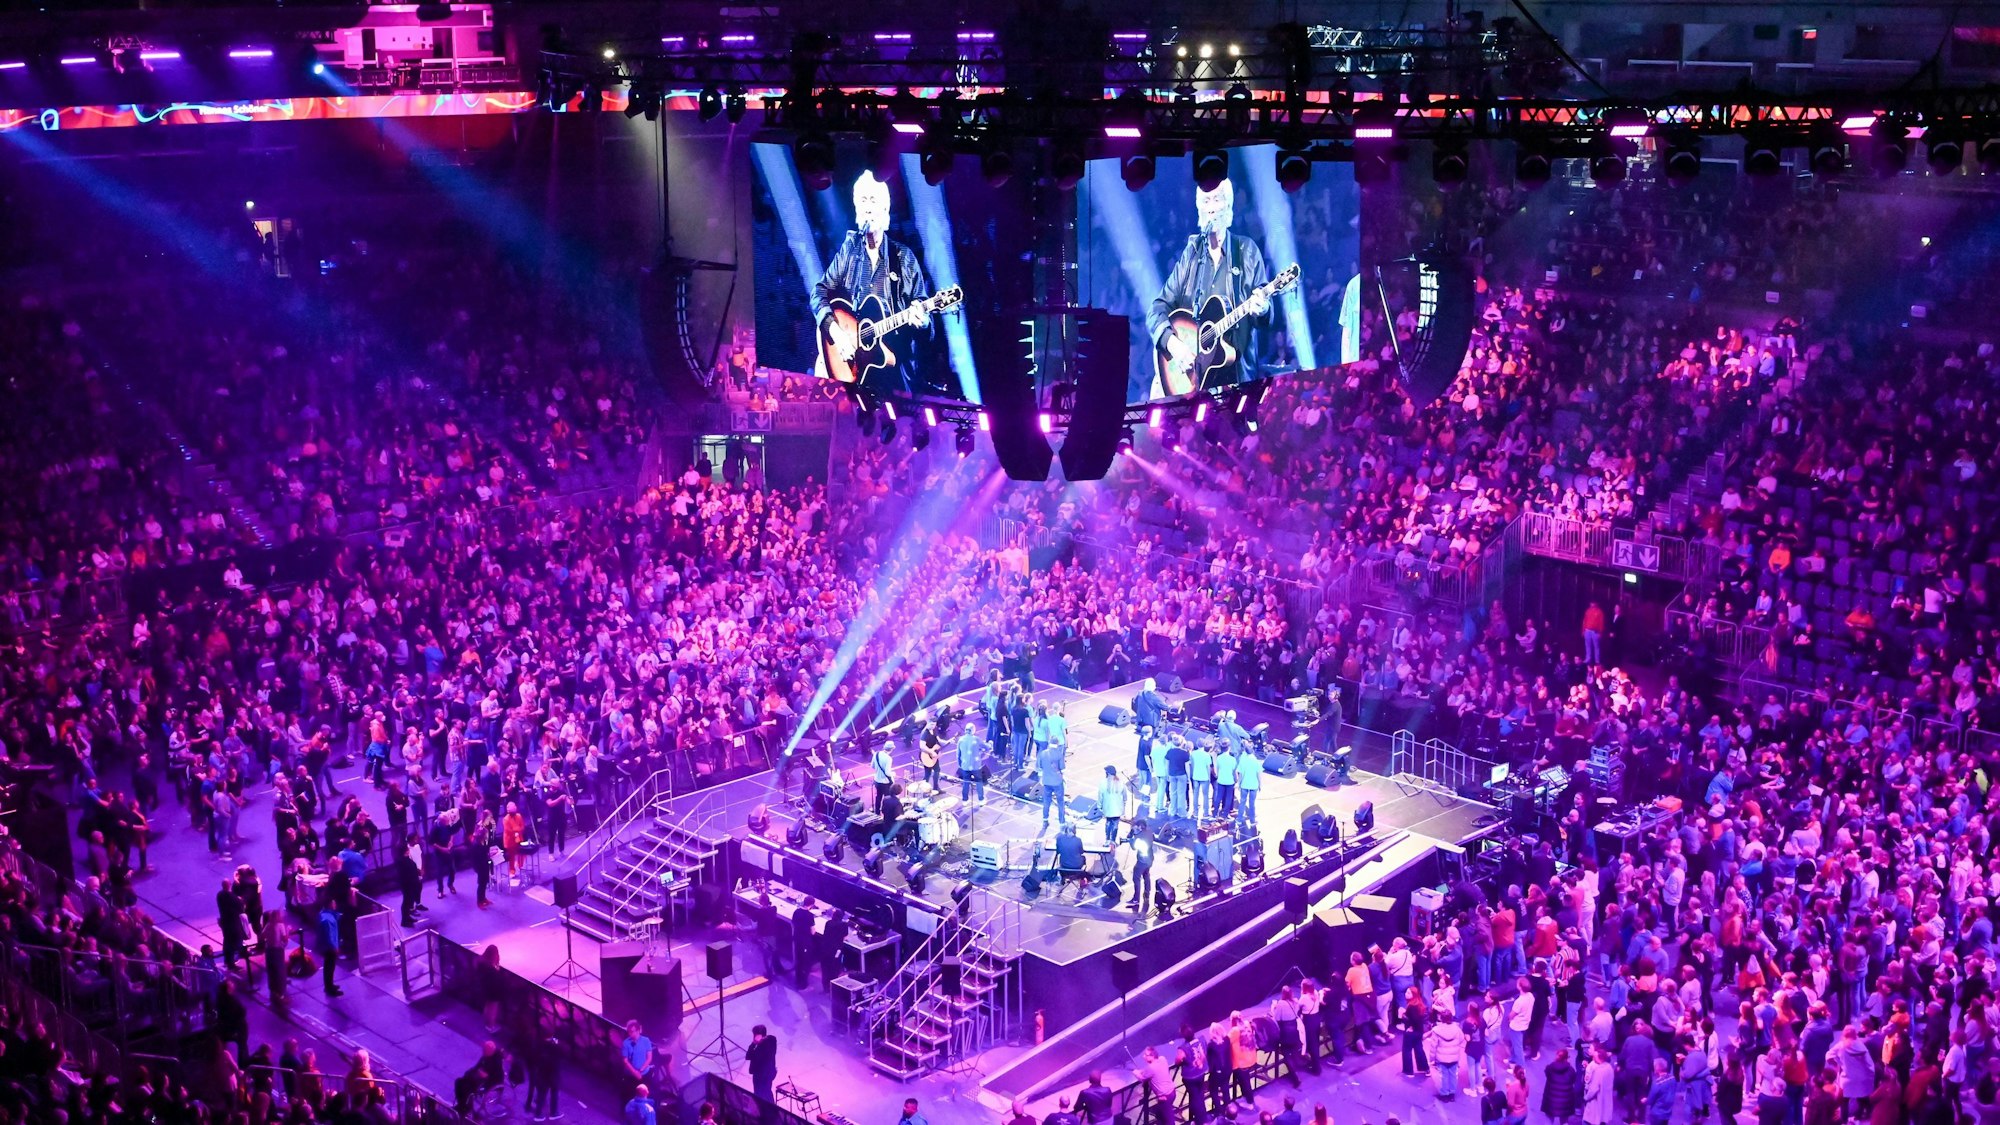 Blick auf die Bühne in der Mitte der Lanxess-Arena, umgeben von Zuschauern.